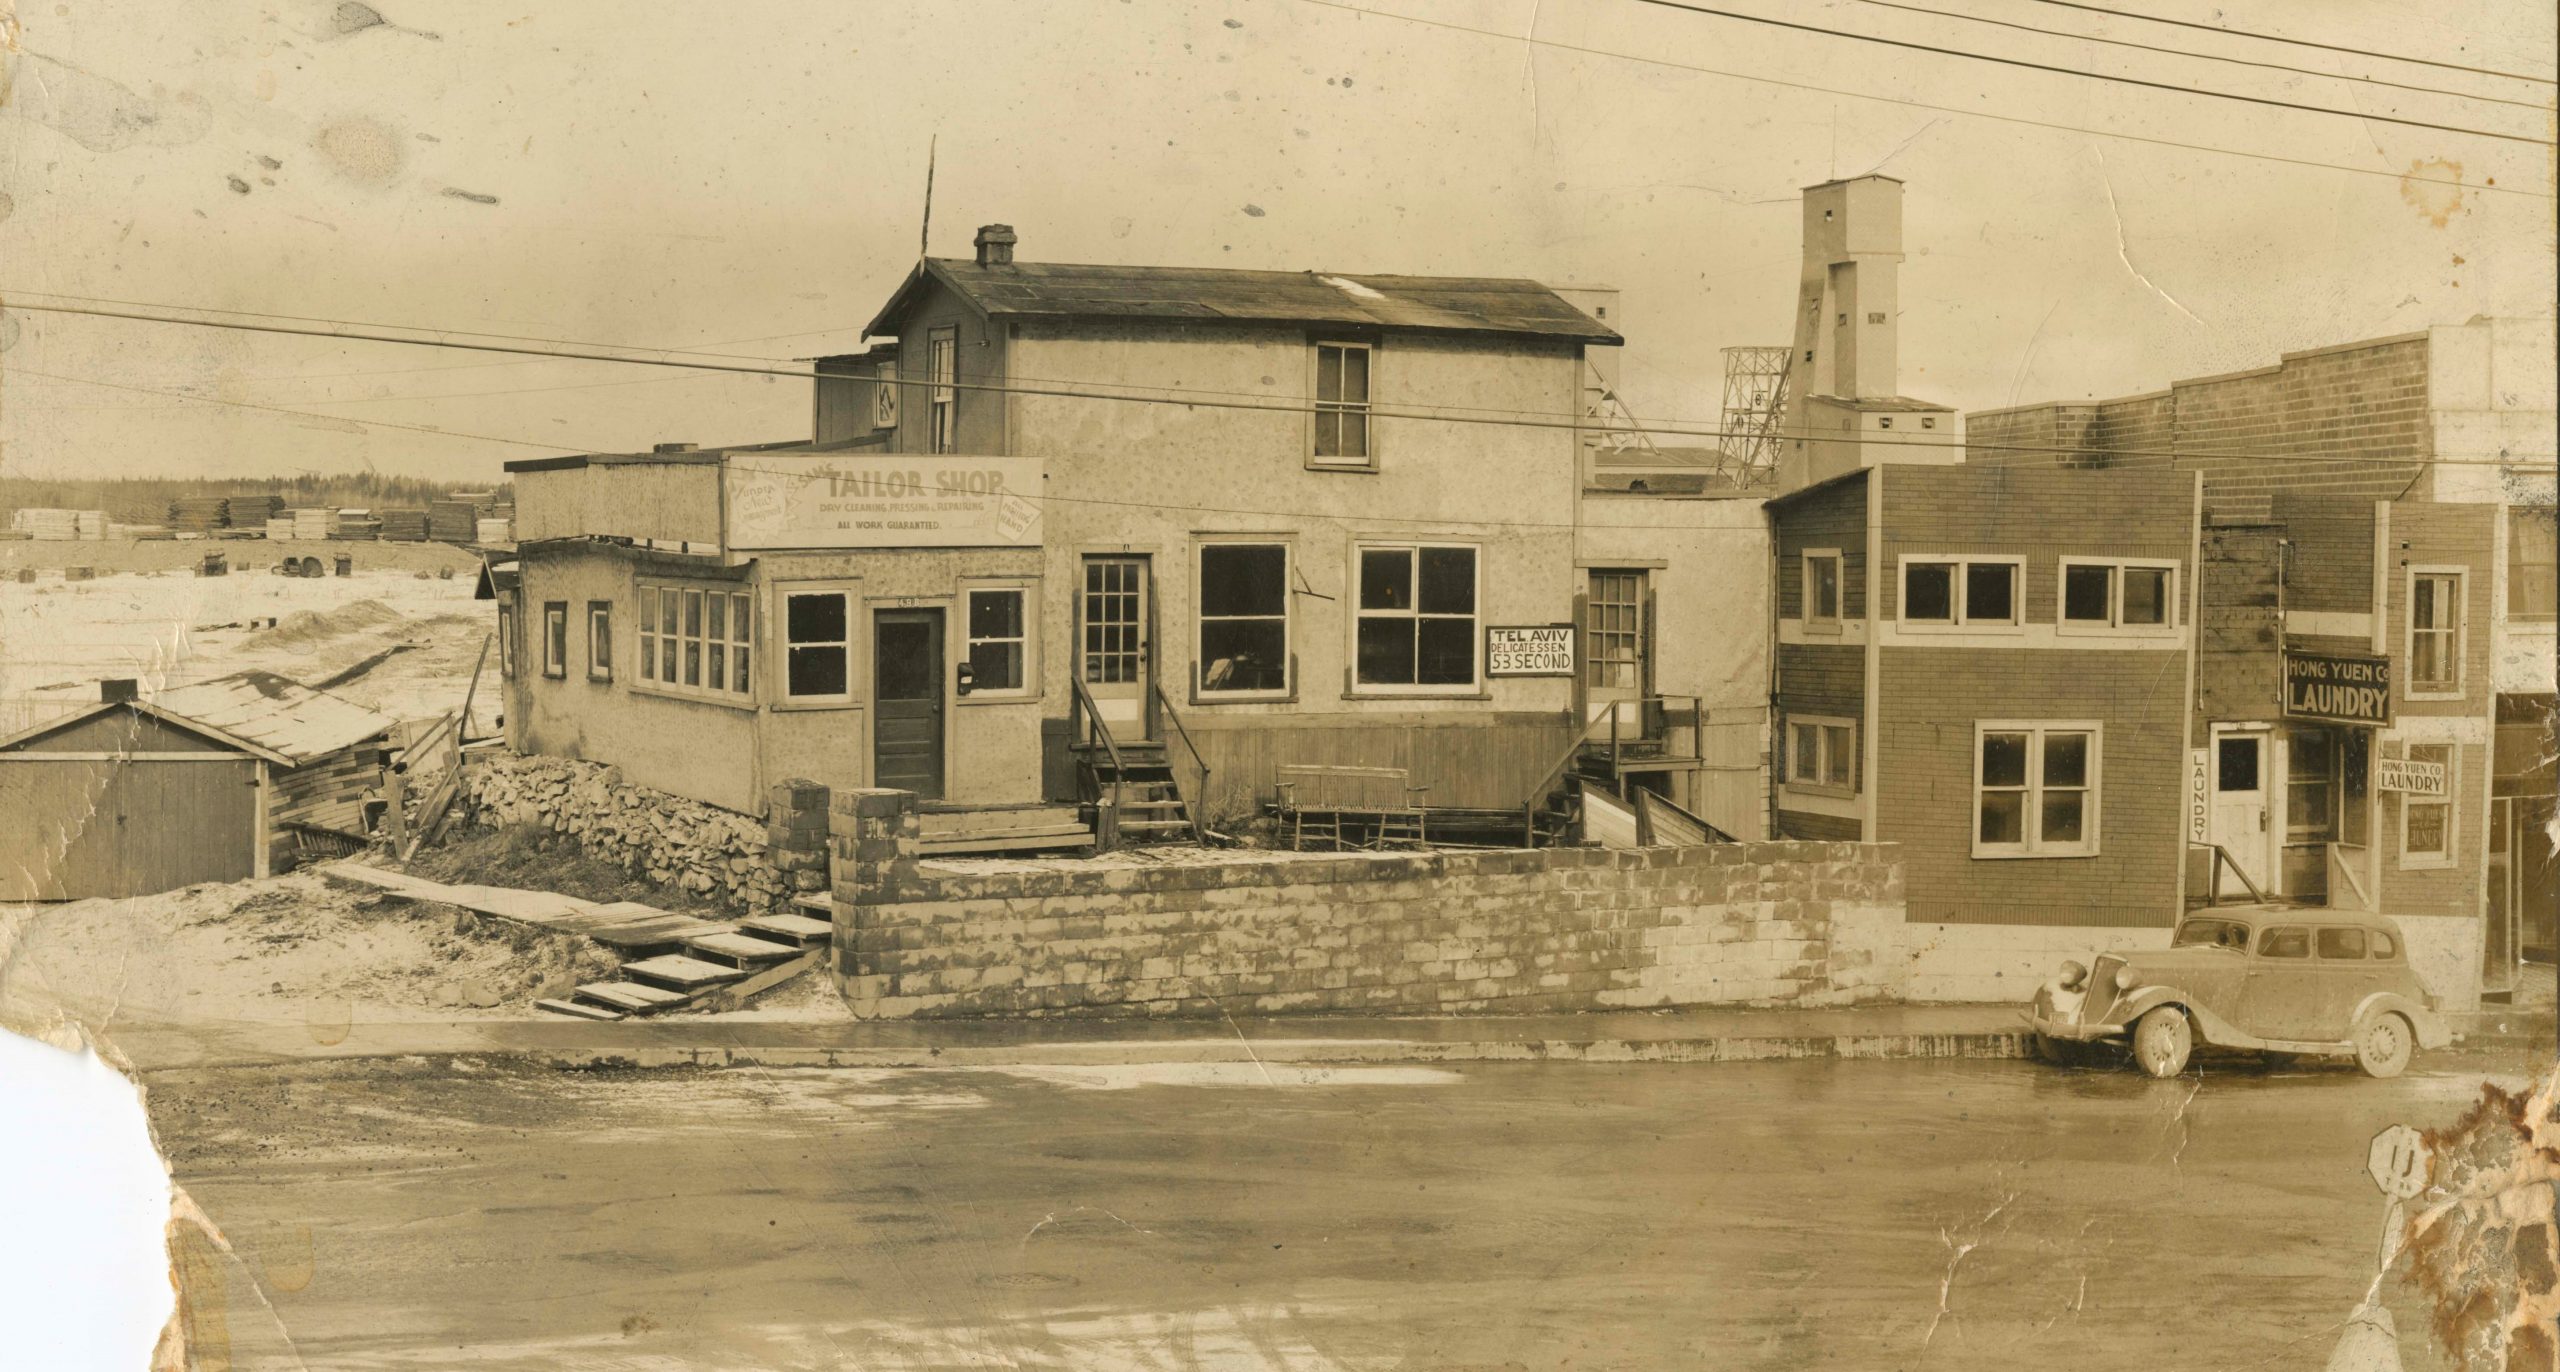 Photographie en noir et blanc d’une maison et de commerces sur une rue avec une voiture garée à droite de l’image. Les bâtiments de la mine sont à l’arrière-plan.